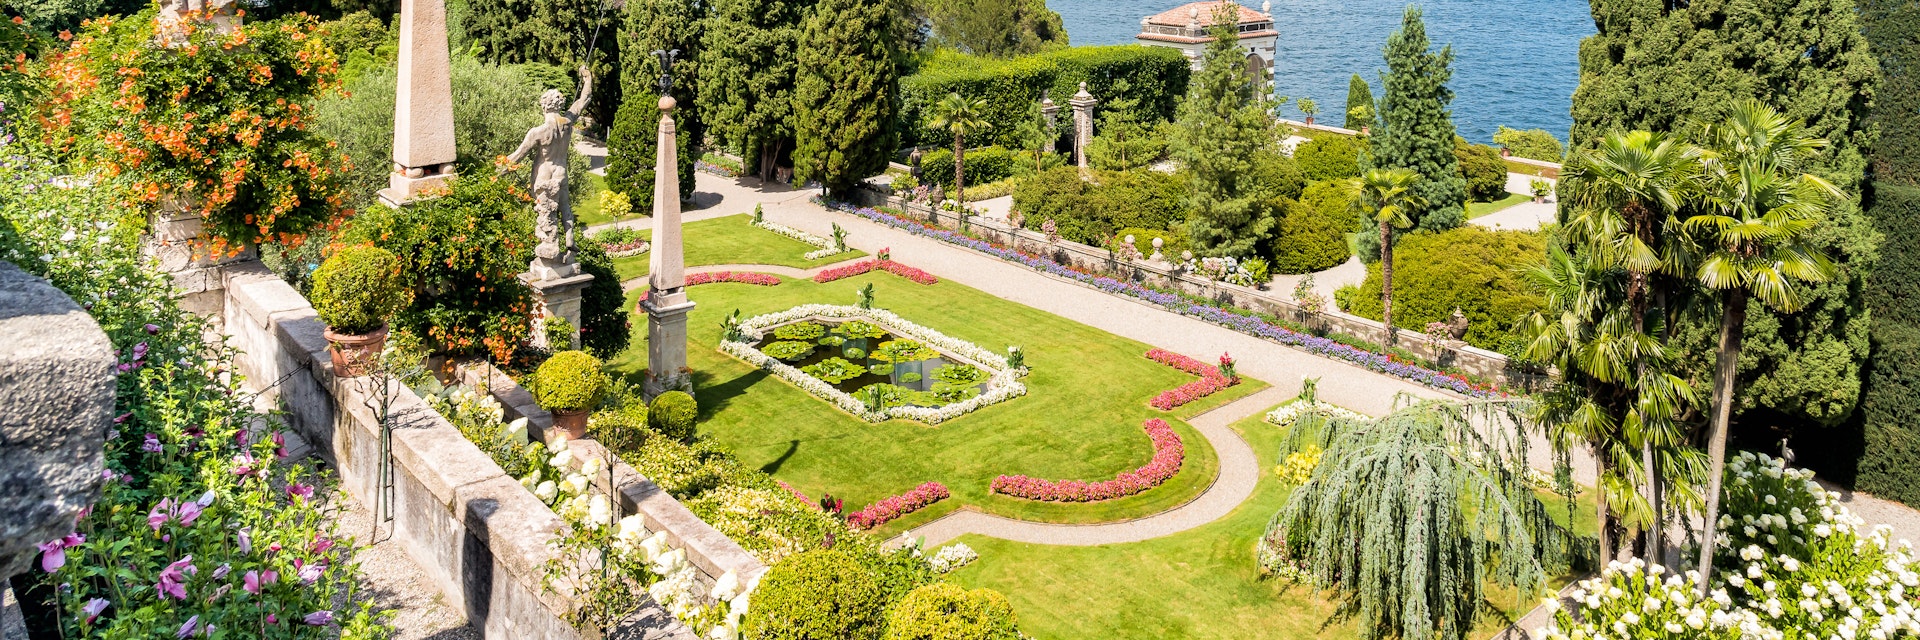 Baroque garden on the Island of Bella in Lake Maggiore.
